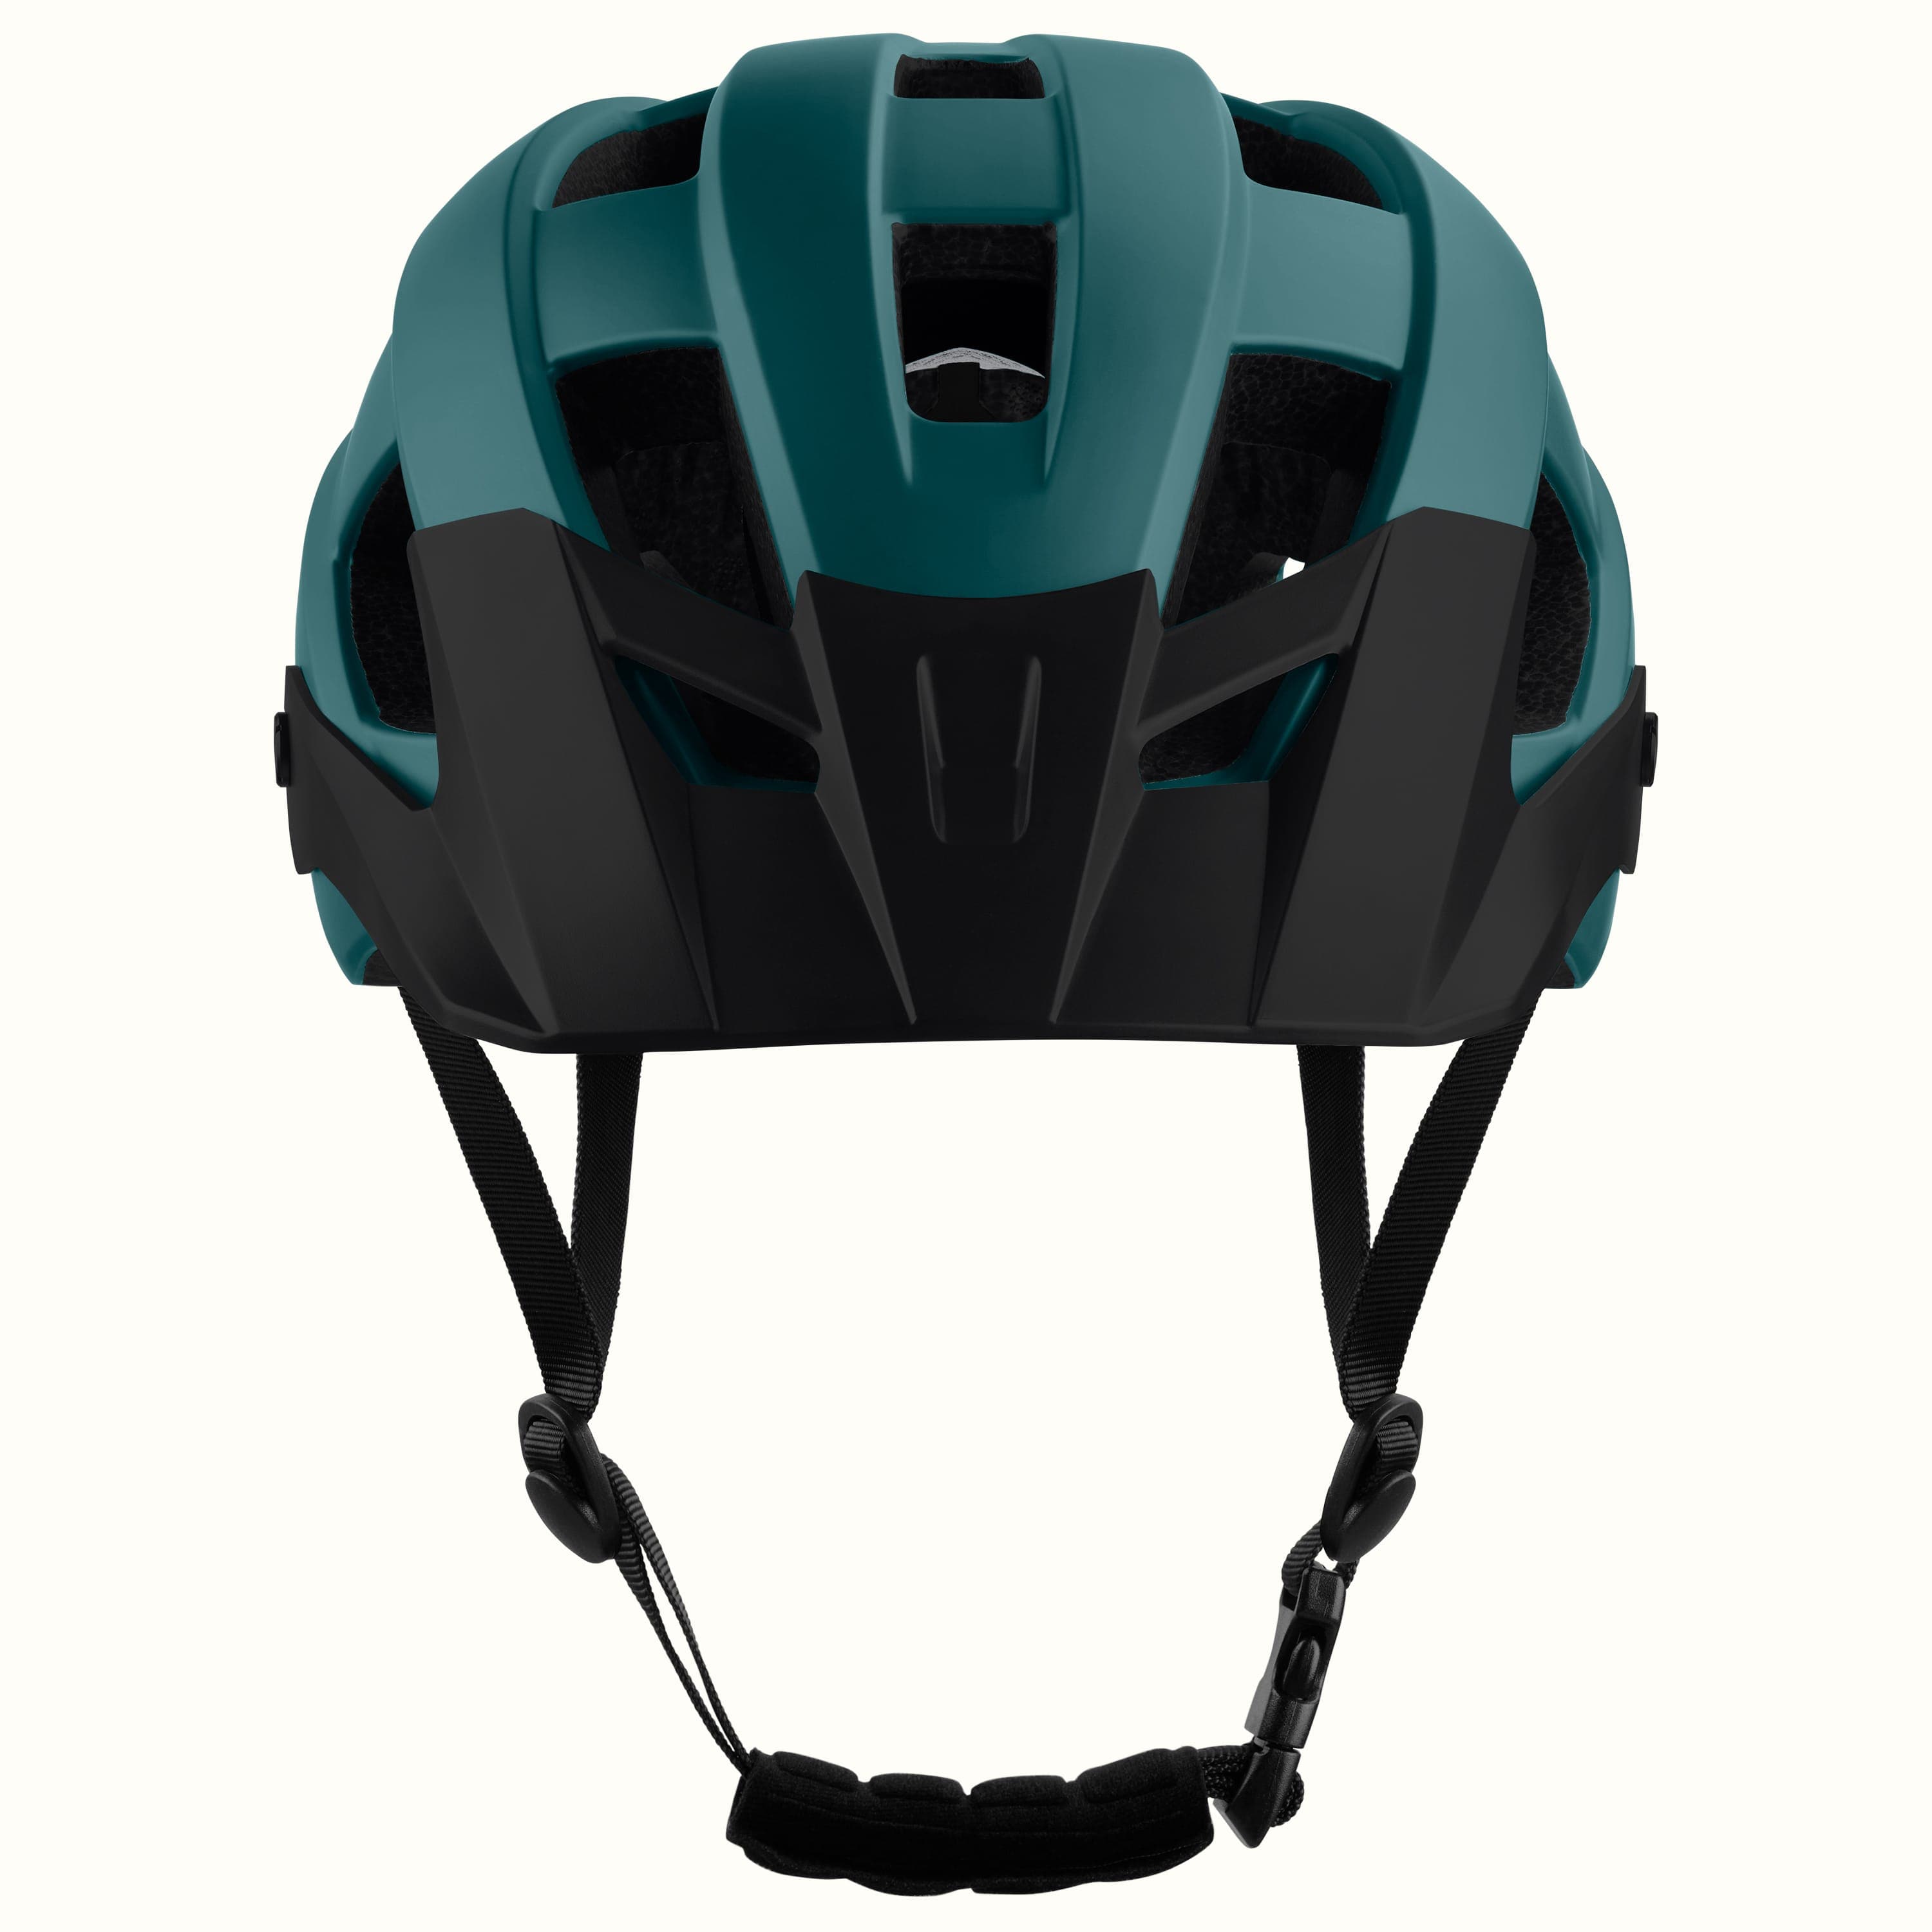 Rowan Mountain Bike Helmet